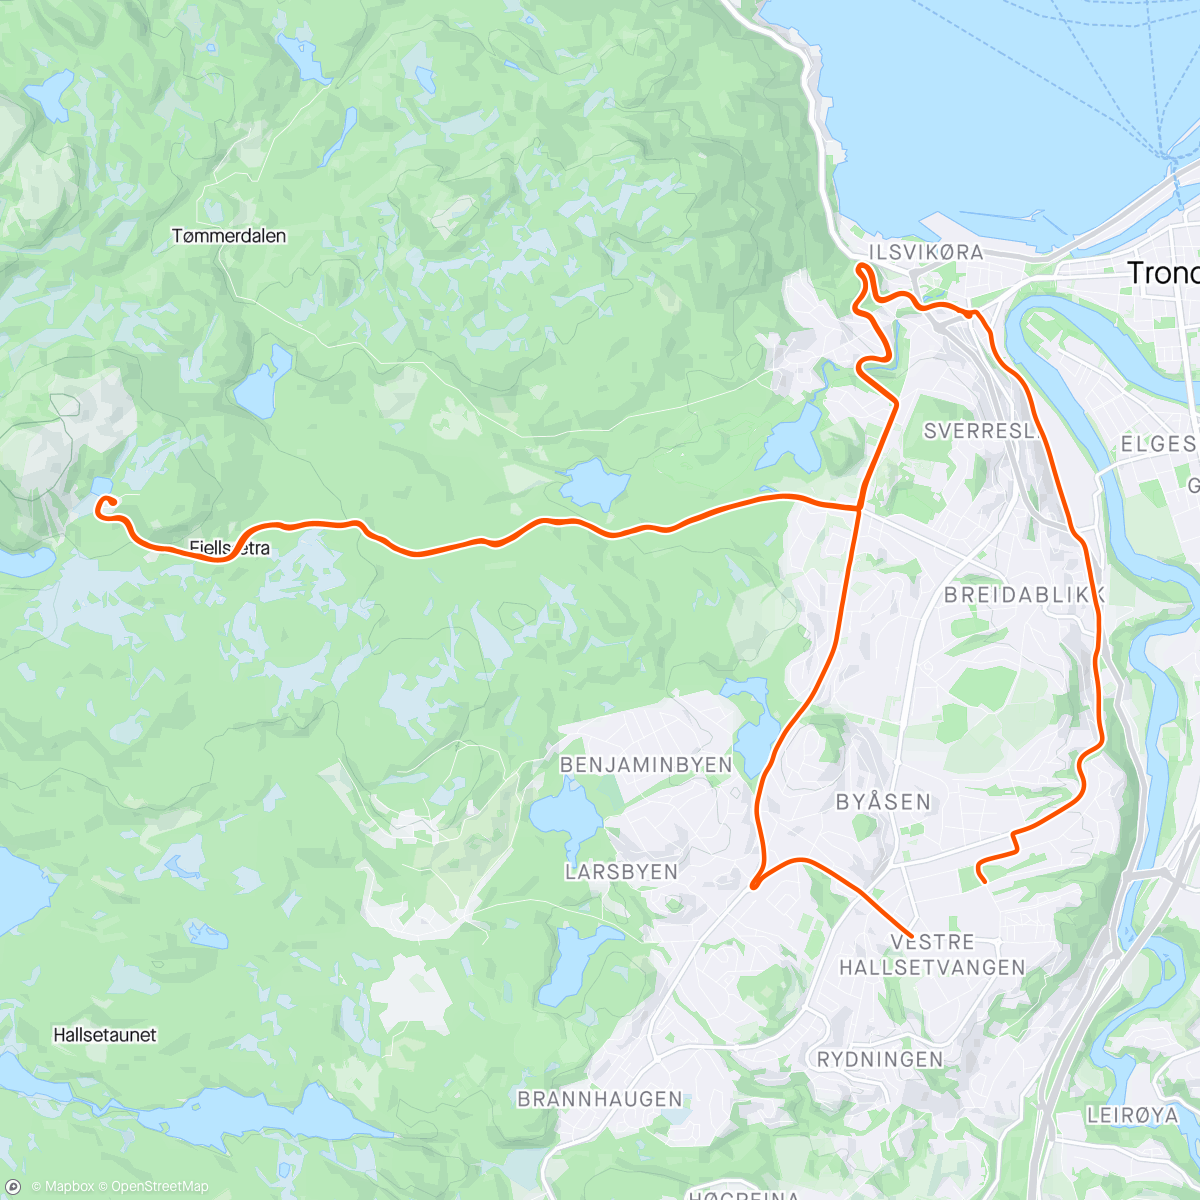 「Årets første på Skistua」活動的地圖